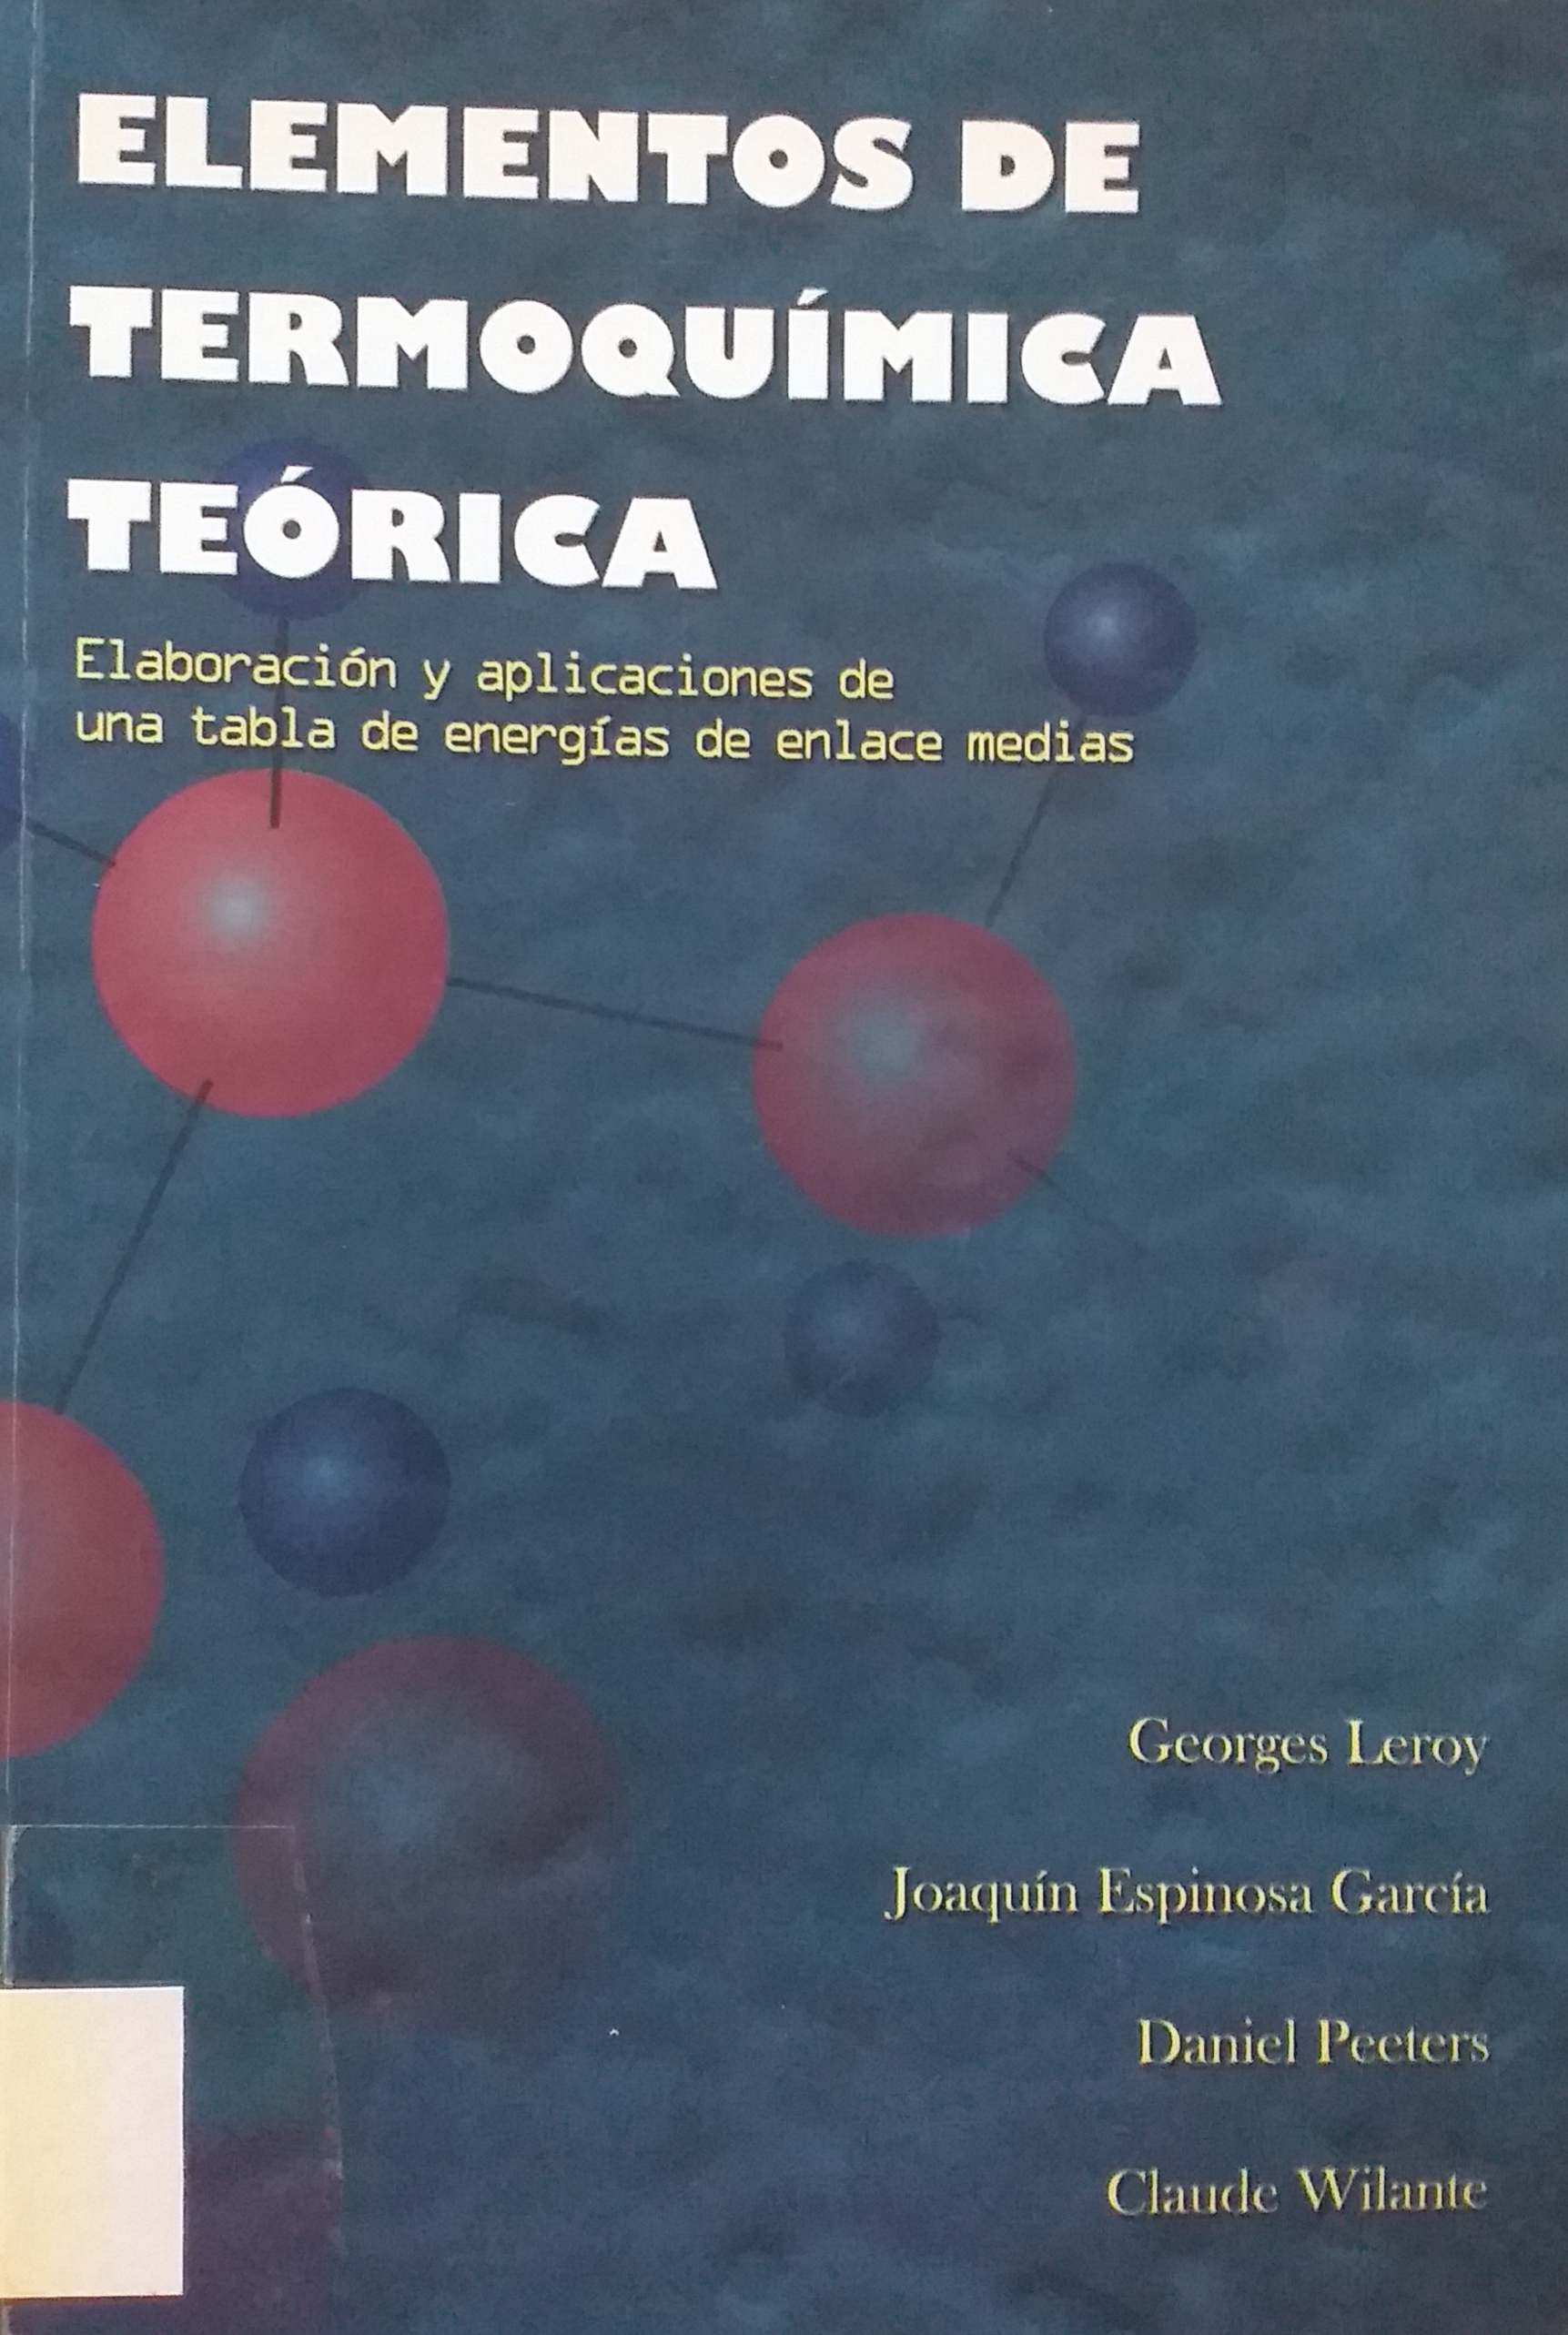 Imagen de portada del libro Elementos de termoquímica teórica